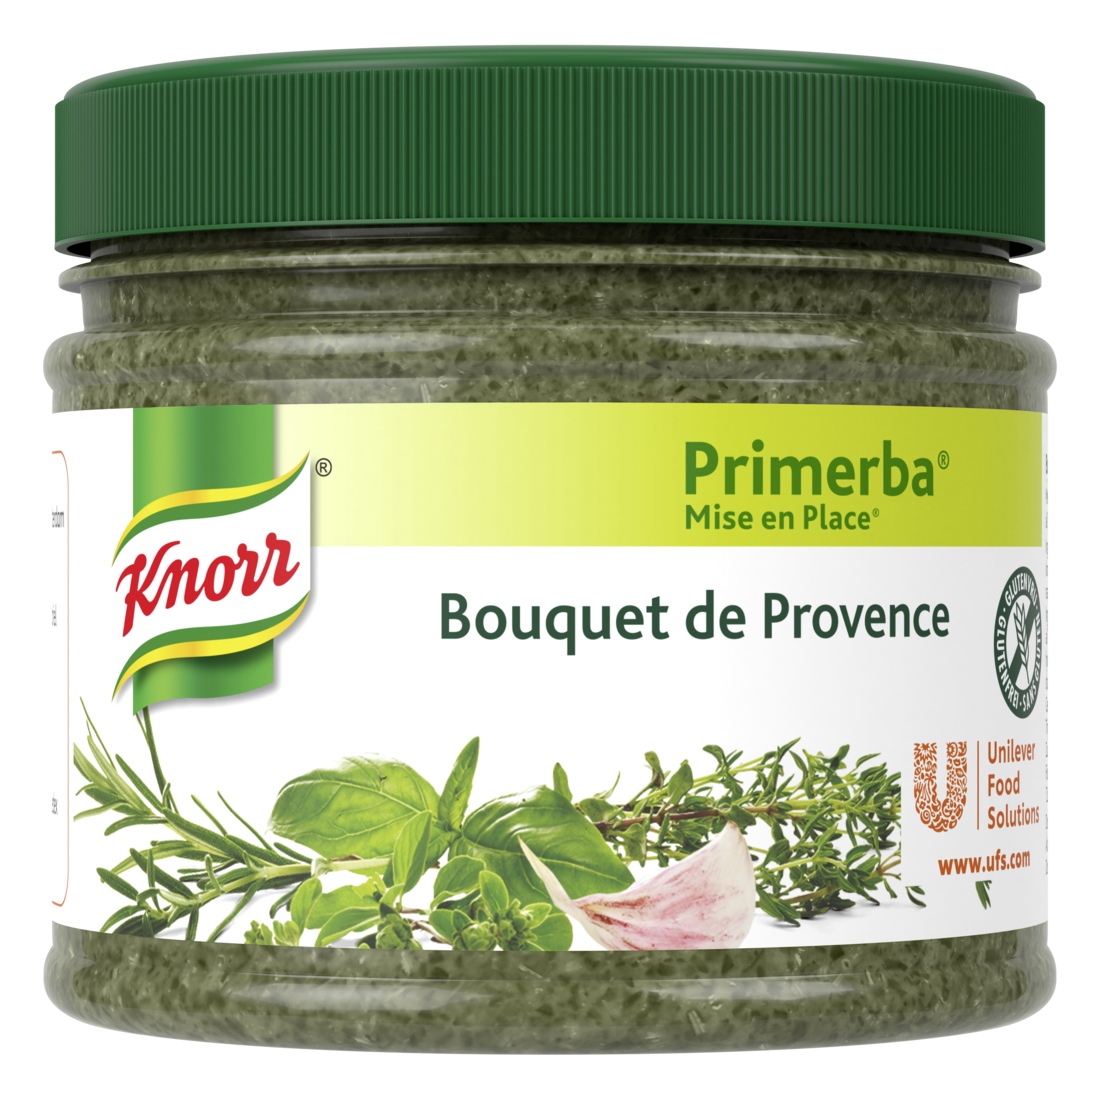 Knorr Mise en place Bouquet de Provence 340g - Knorr Mise en place Primerba personnalise et sublime vos plats.